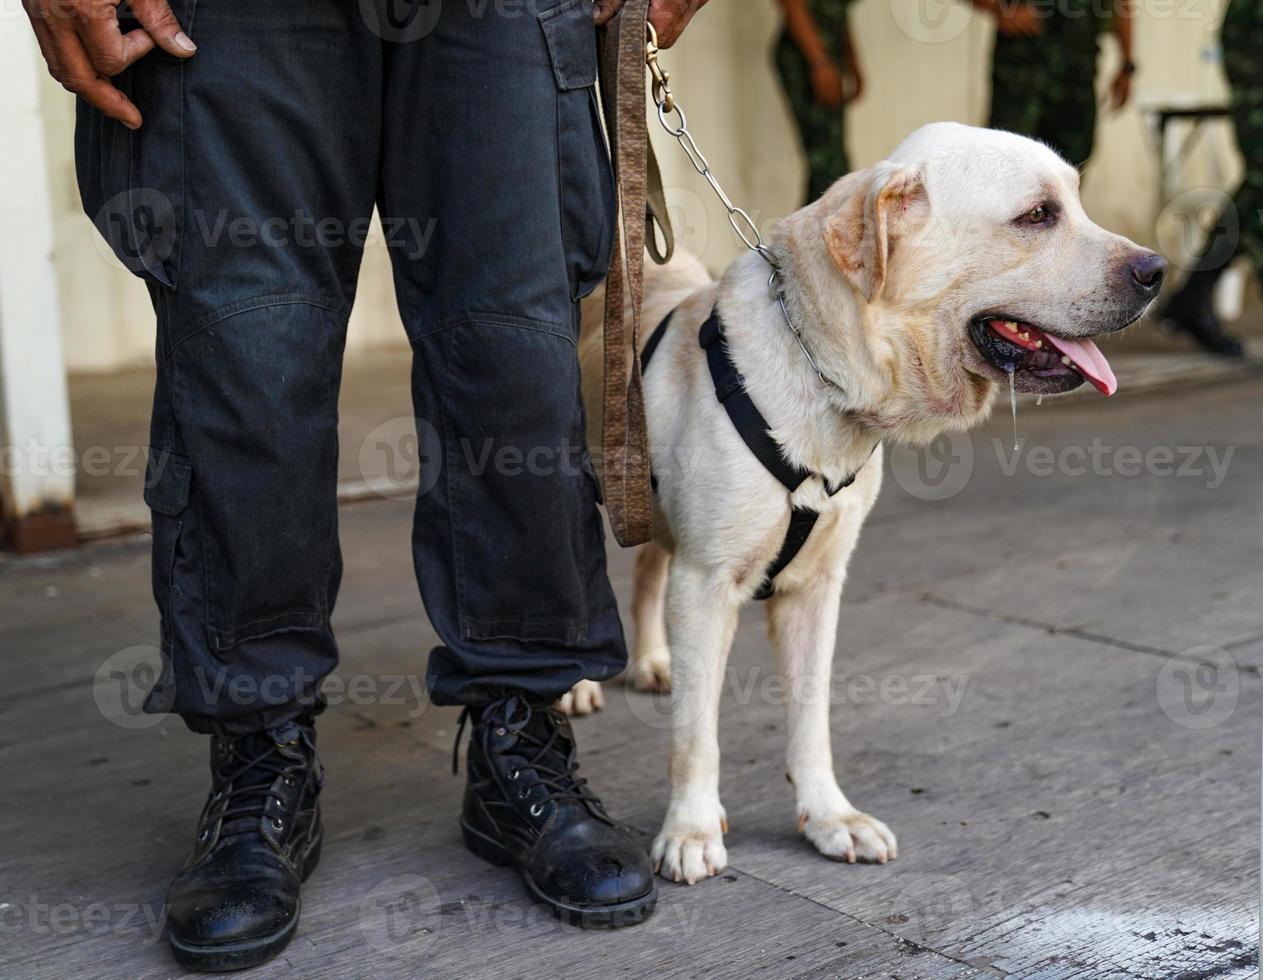 Polizeihund im Dienst, der die Bombe in der Veranstaltung findet. foto